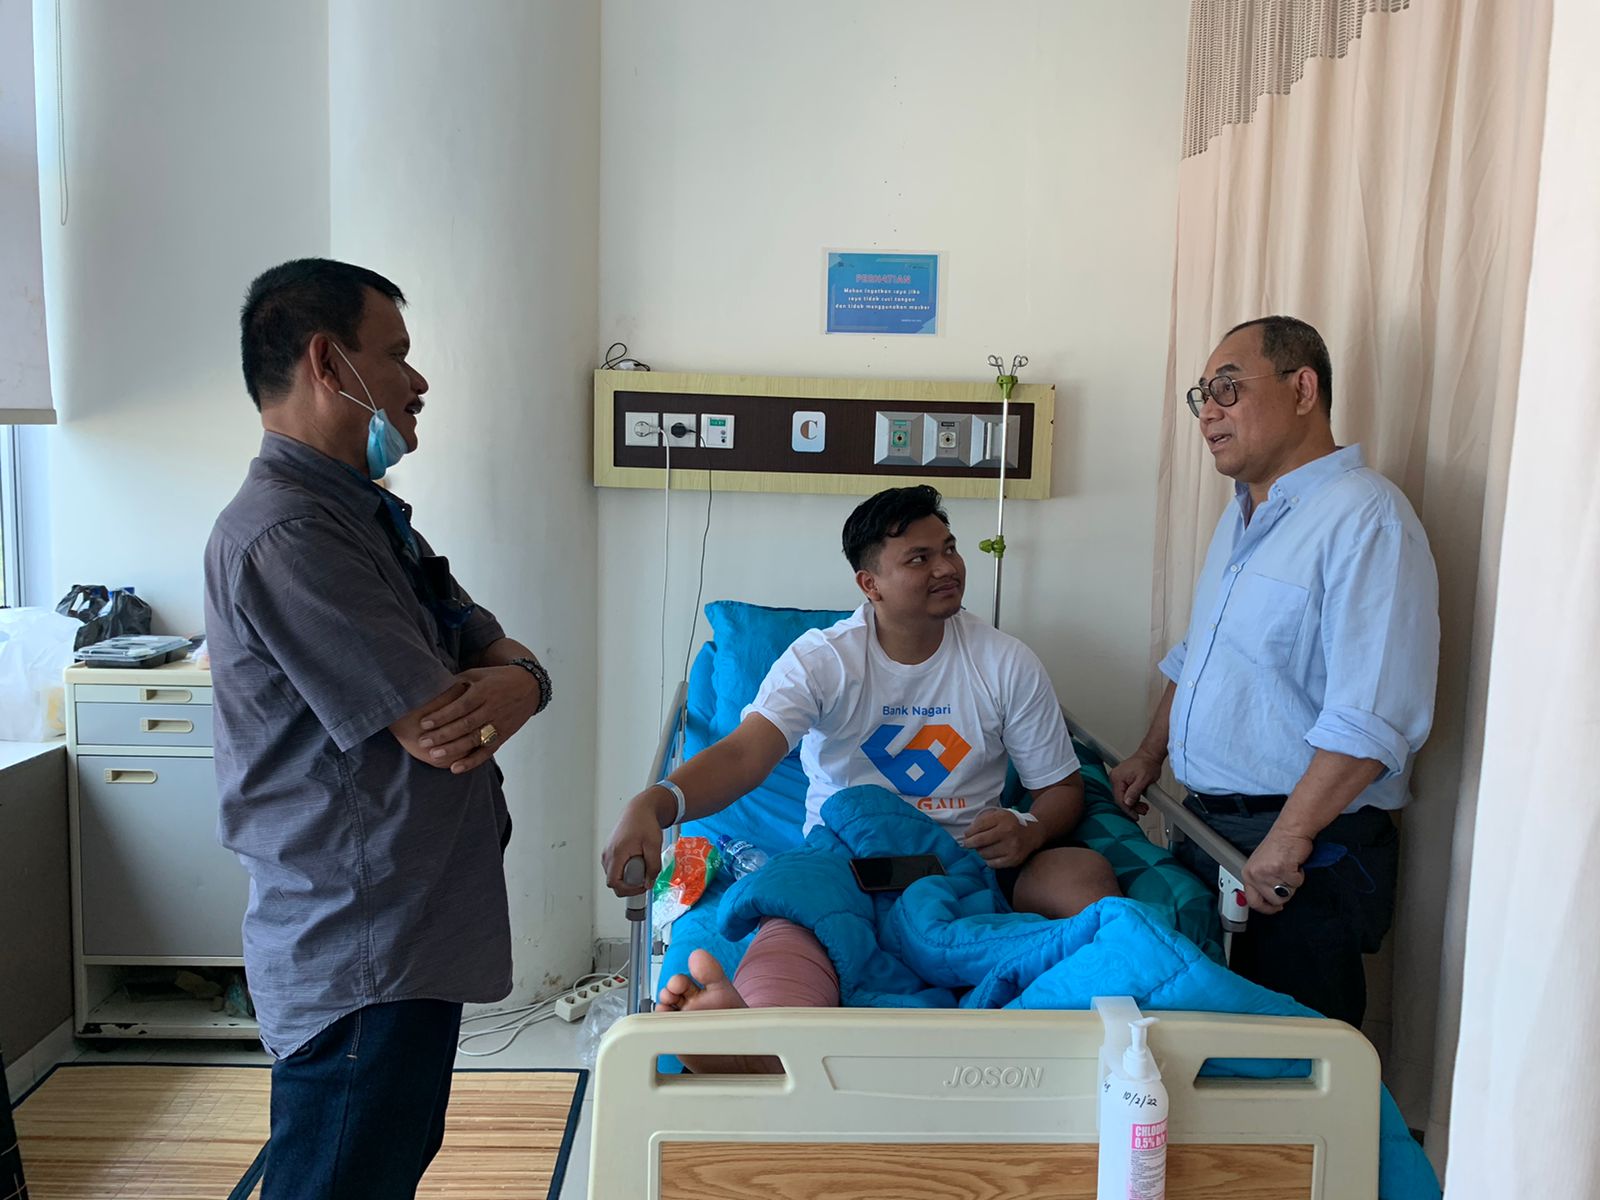 Ketua KONI Sumbar, Roni Pahlawan mengunjungi pesilat Ridhan Aprilianda usai menjalani operasi (Foto : Humas KONI Sumbar)